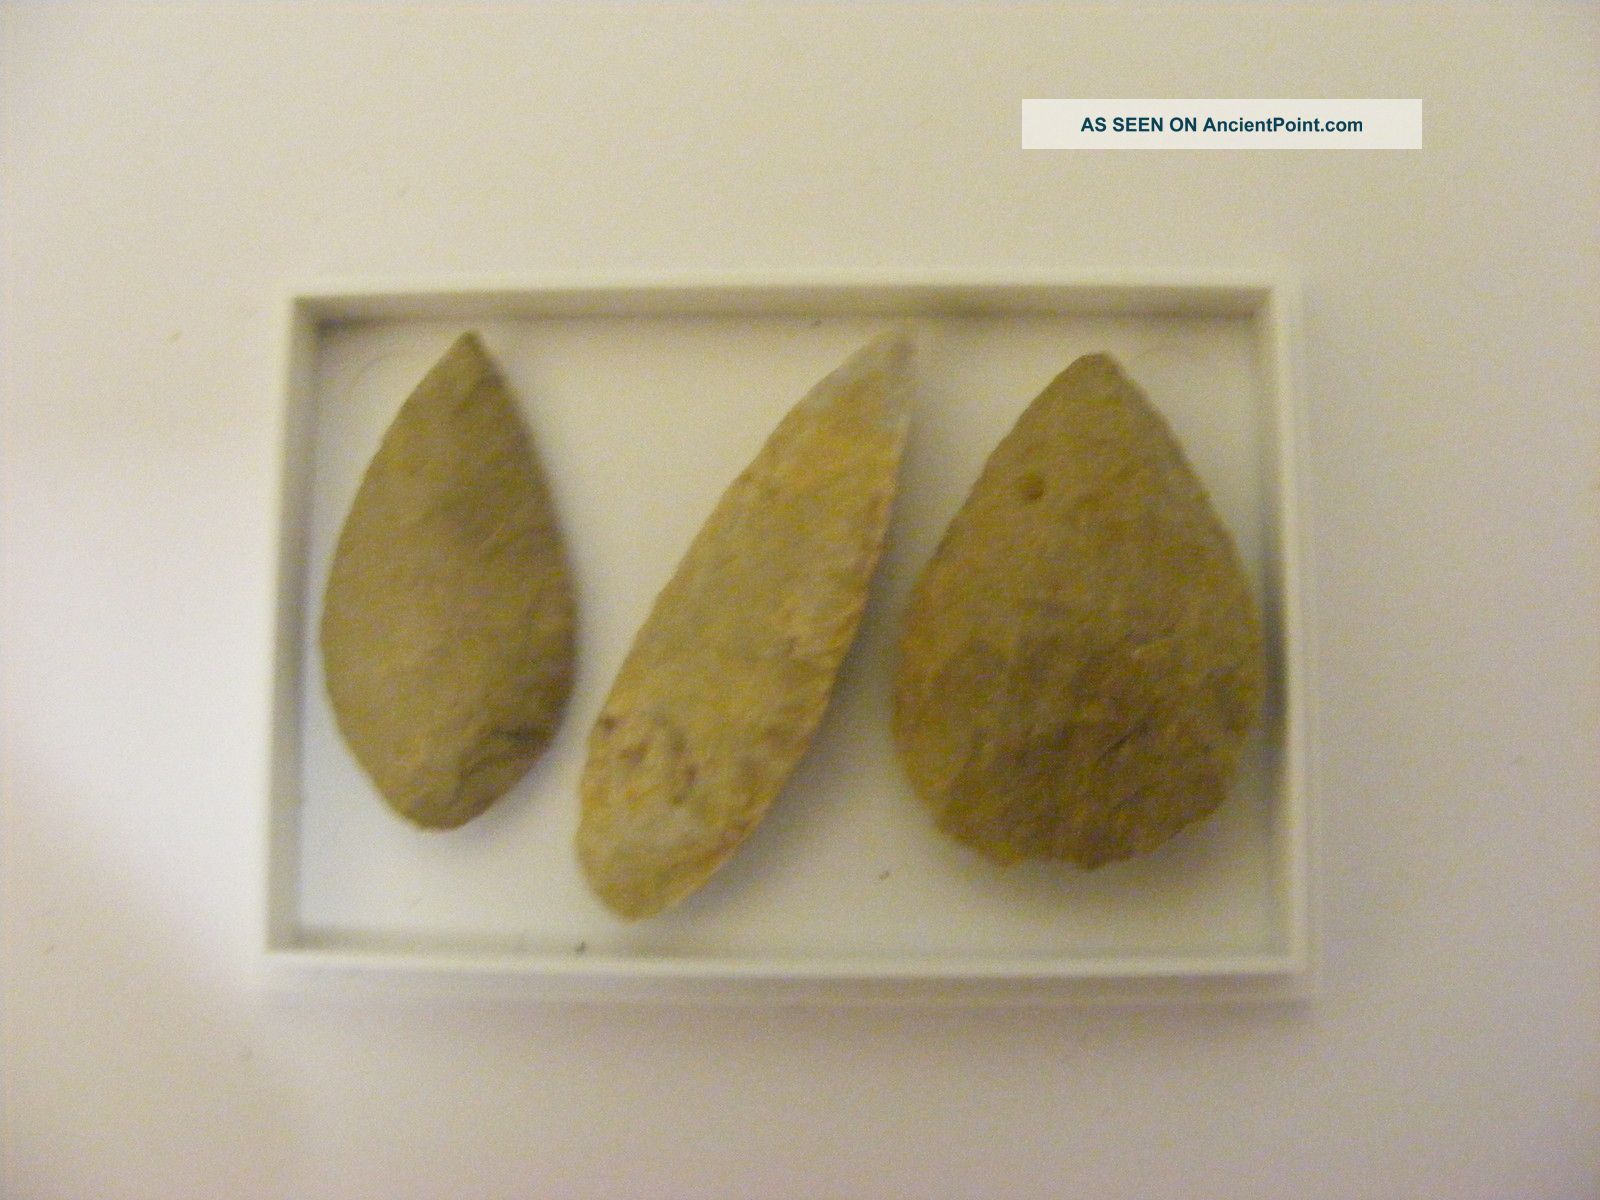 Set Of 3 Neolithic Arrowheads (9) - C3000 Bc Neolithic & Paleolithic photo